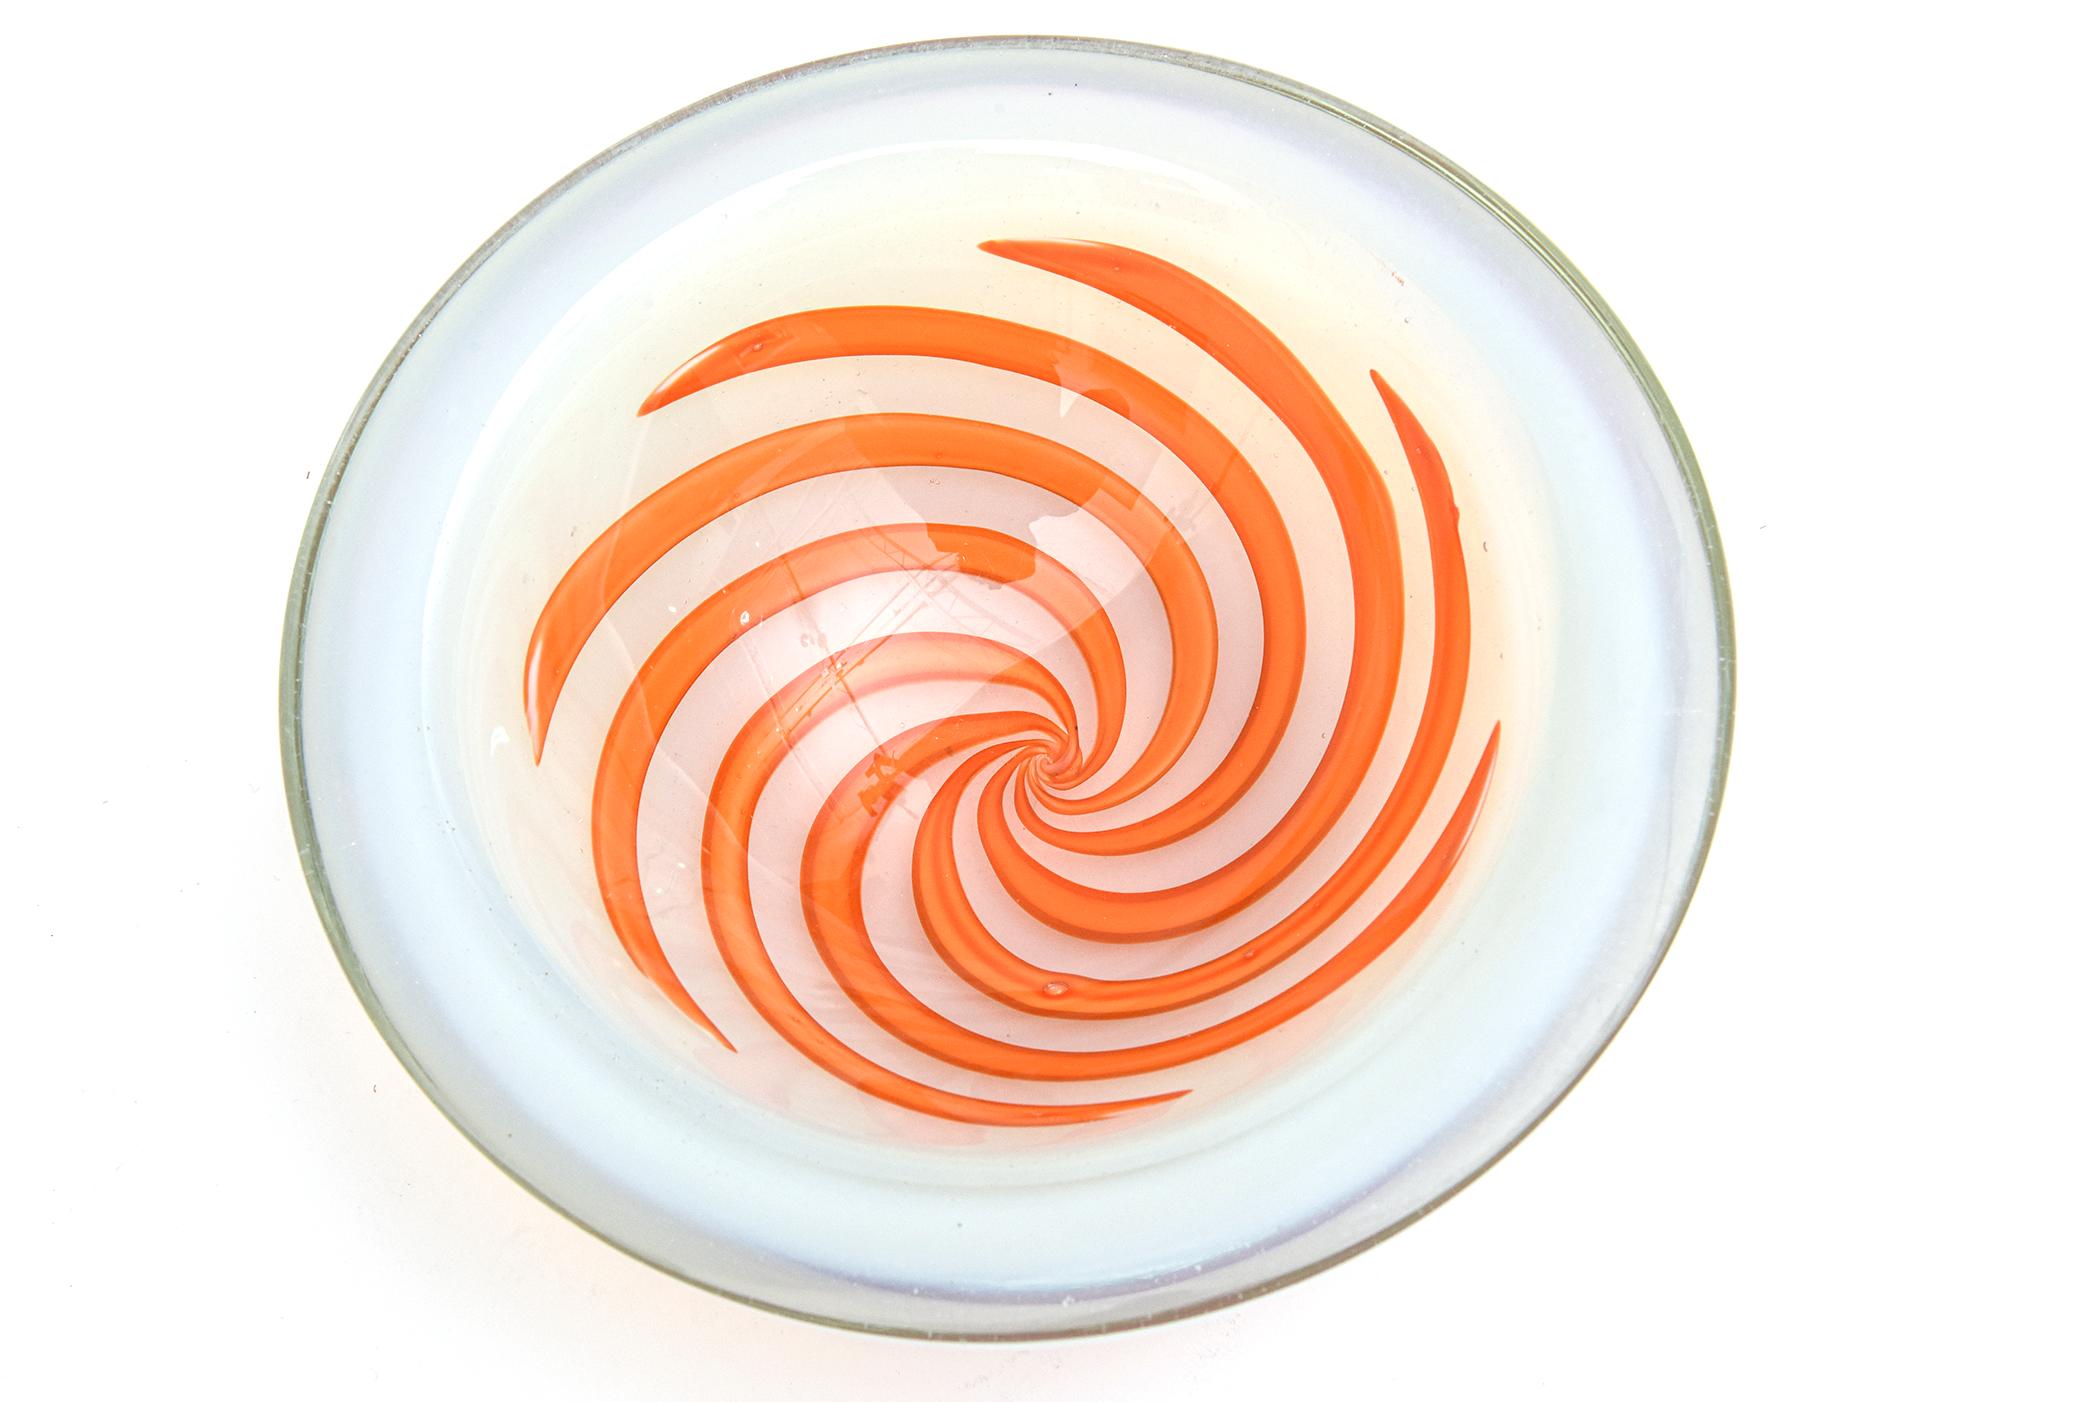 Ce magnifique bol rond en verre soufflé à la bouche de Murano par Fratelli Toso est fait d'une épaisse paroi de verre opalescent avec un intérieur de tourbillons optiques orange. Il a un peu la forme d'un bol en géode. Il est grand et lourd. Can